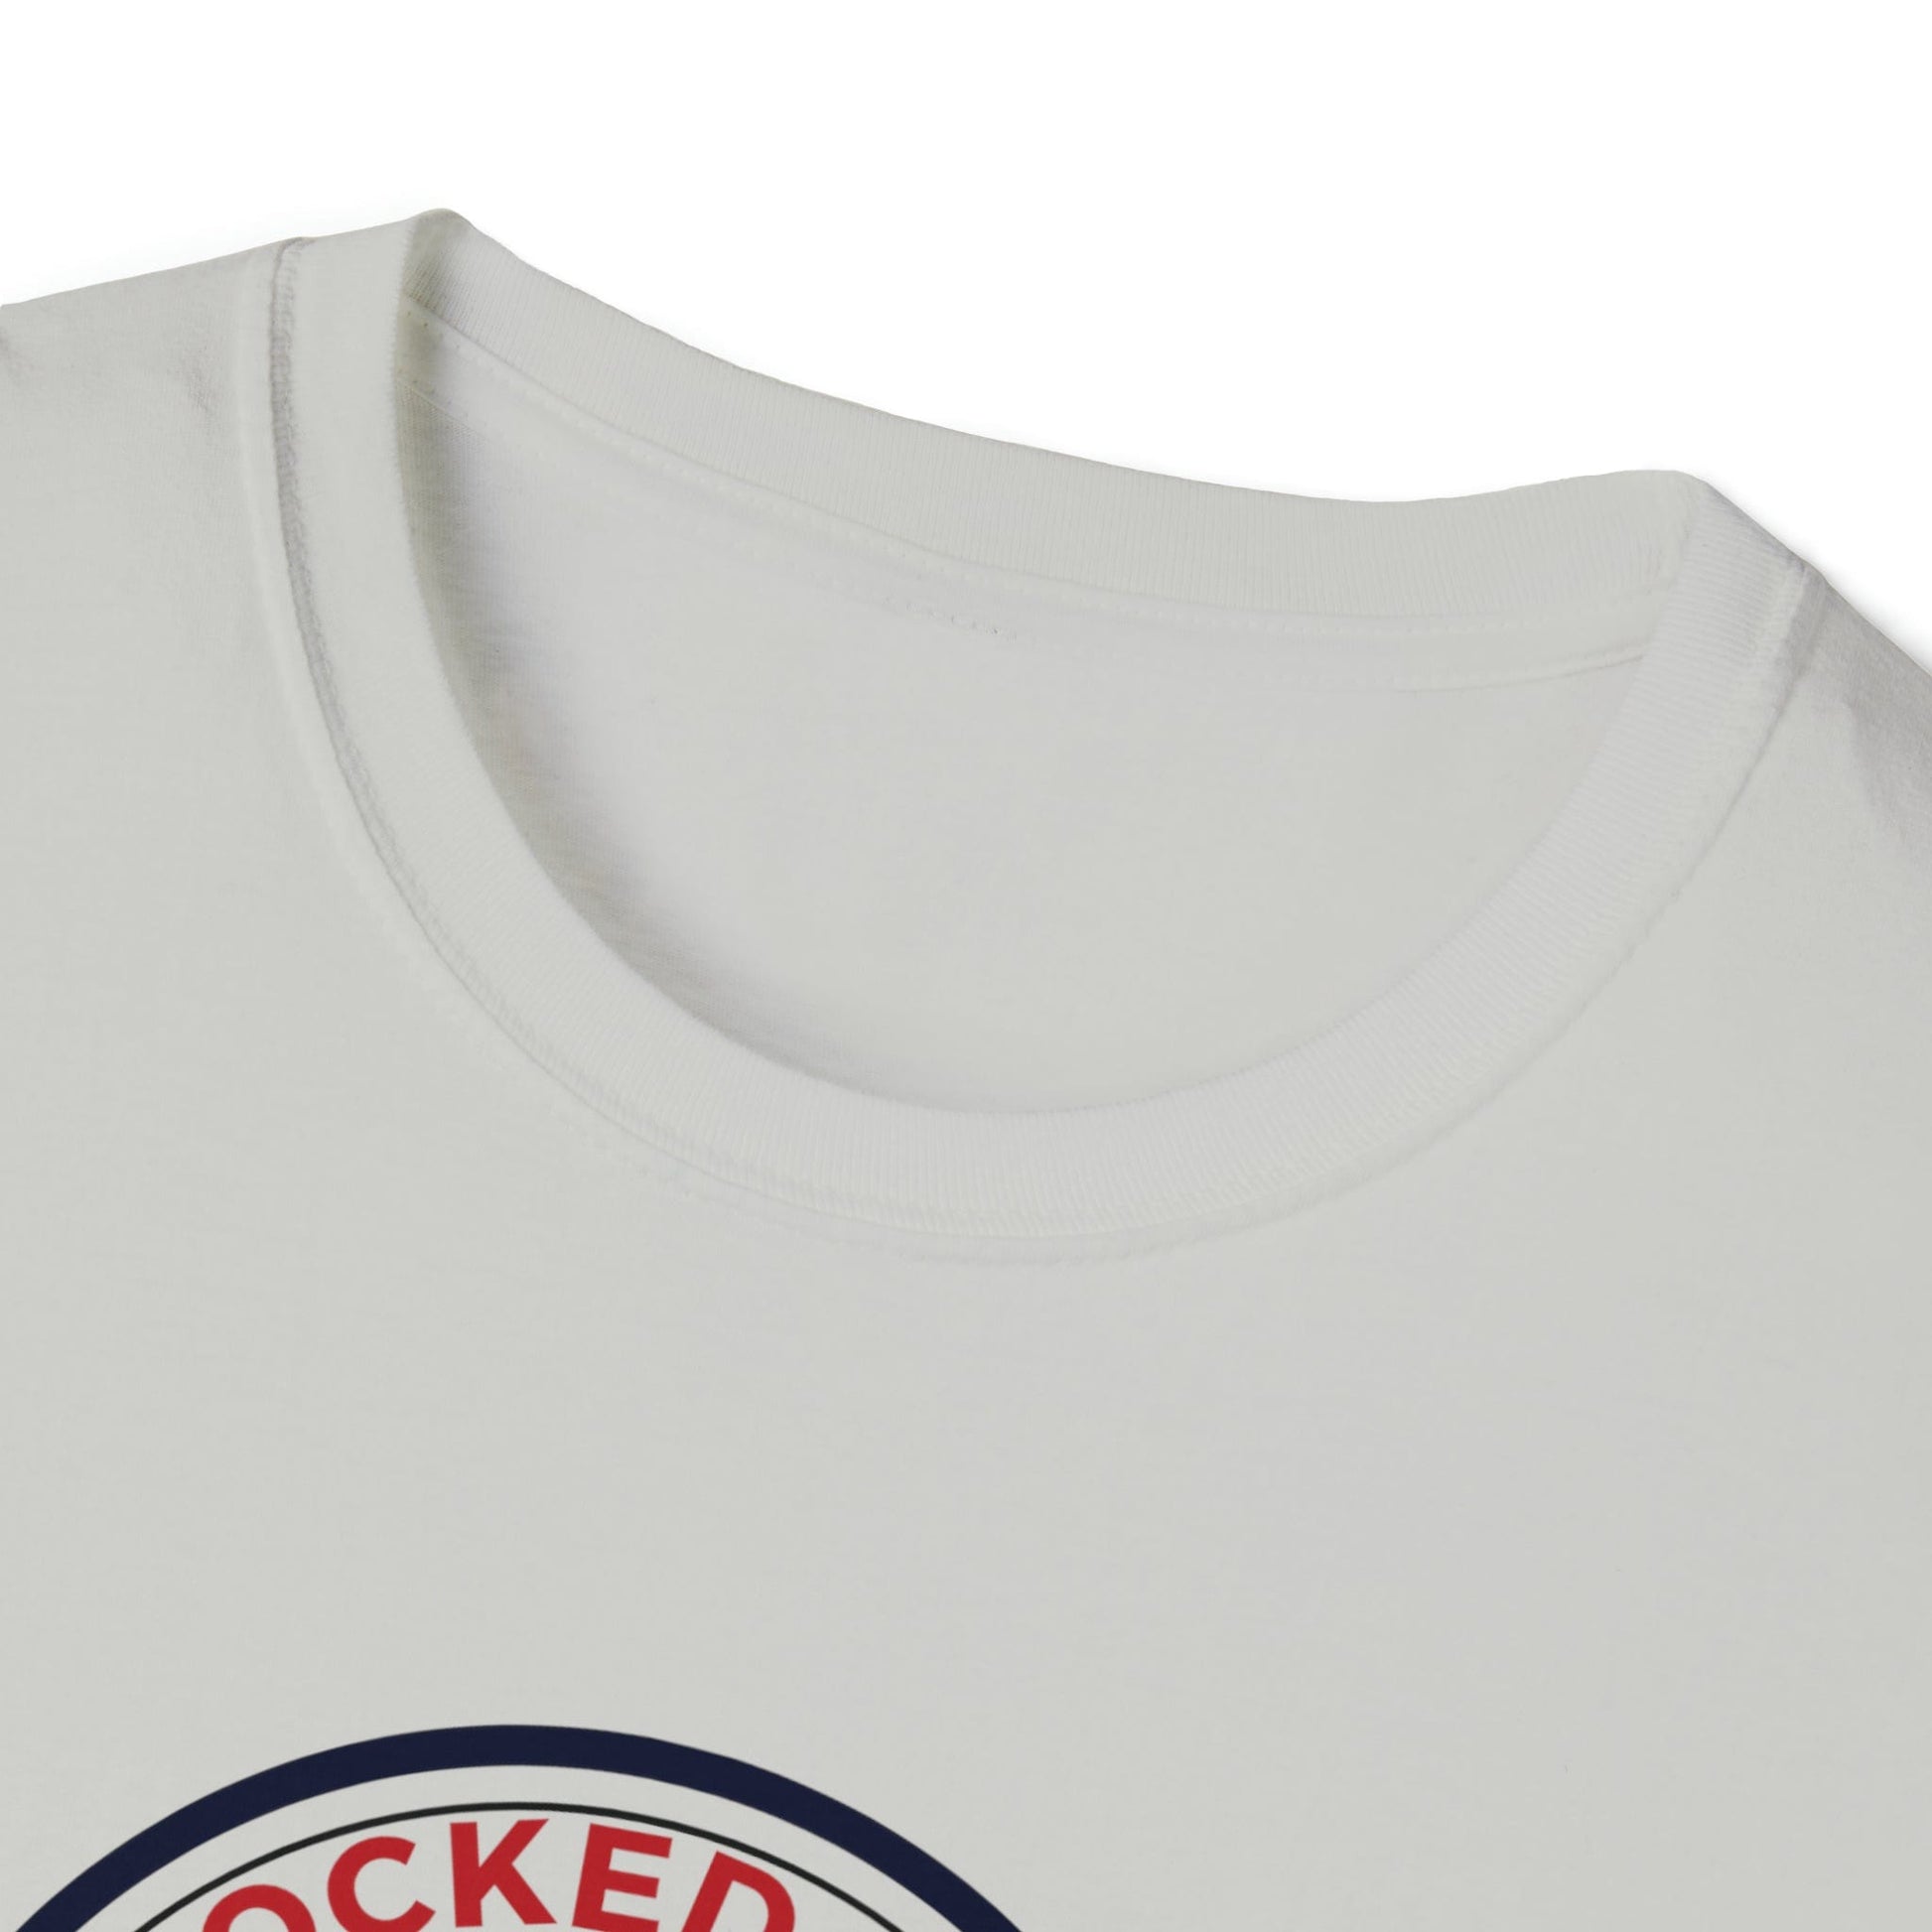 T-Shirt LockedBoy Sports Club - Chastity Tshirt Kettlebell LEATHERDADDY BATOR